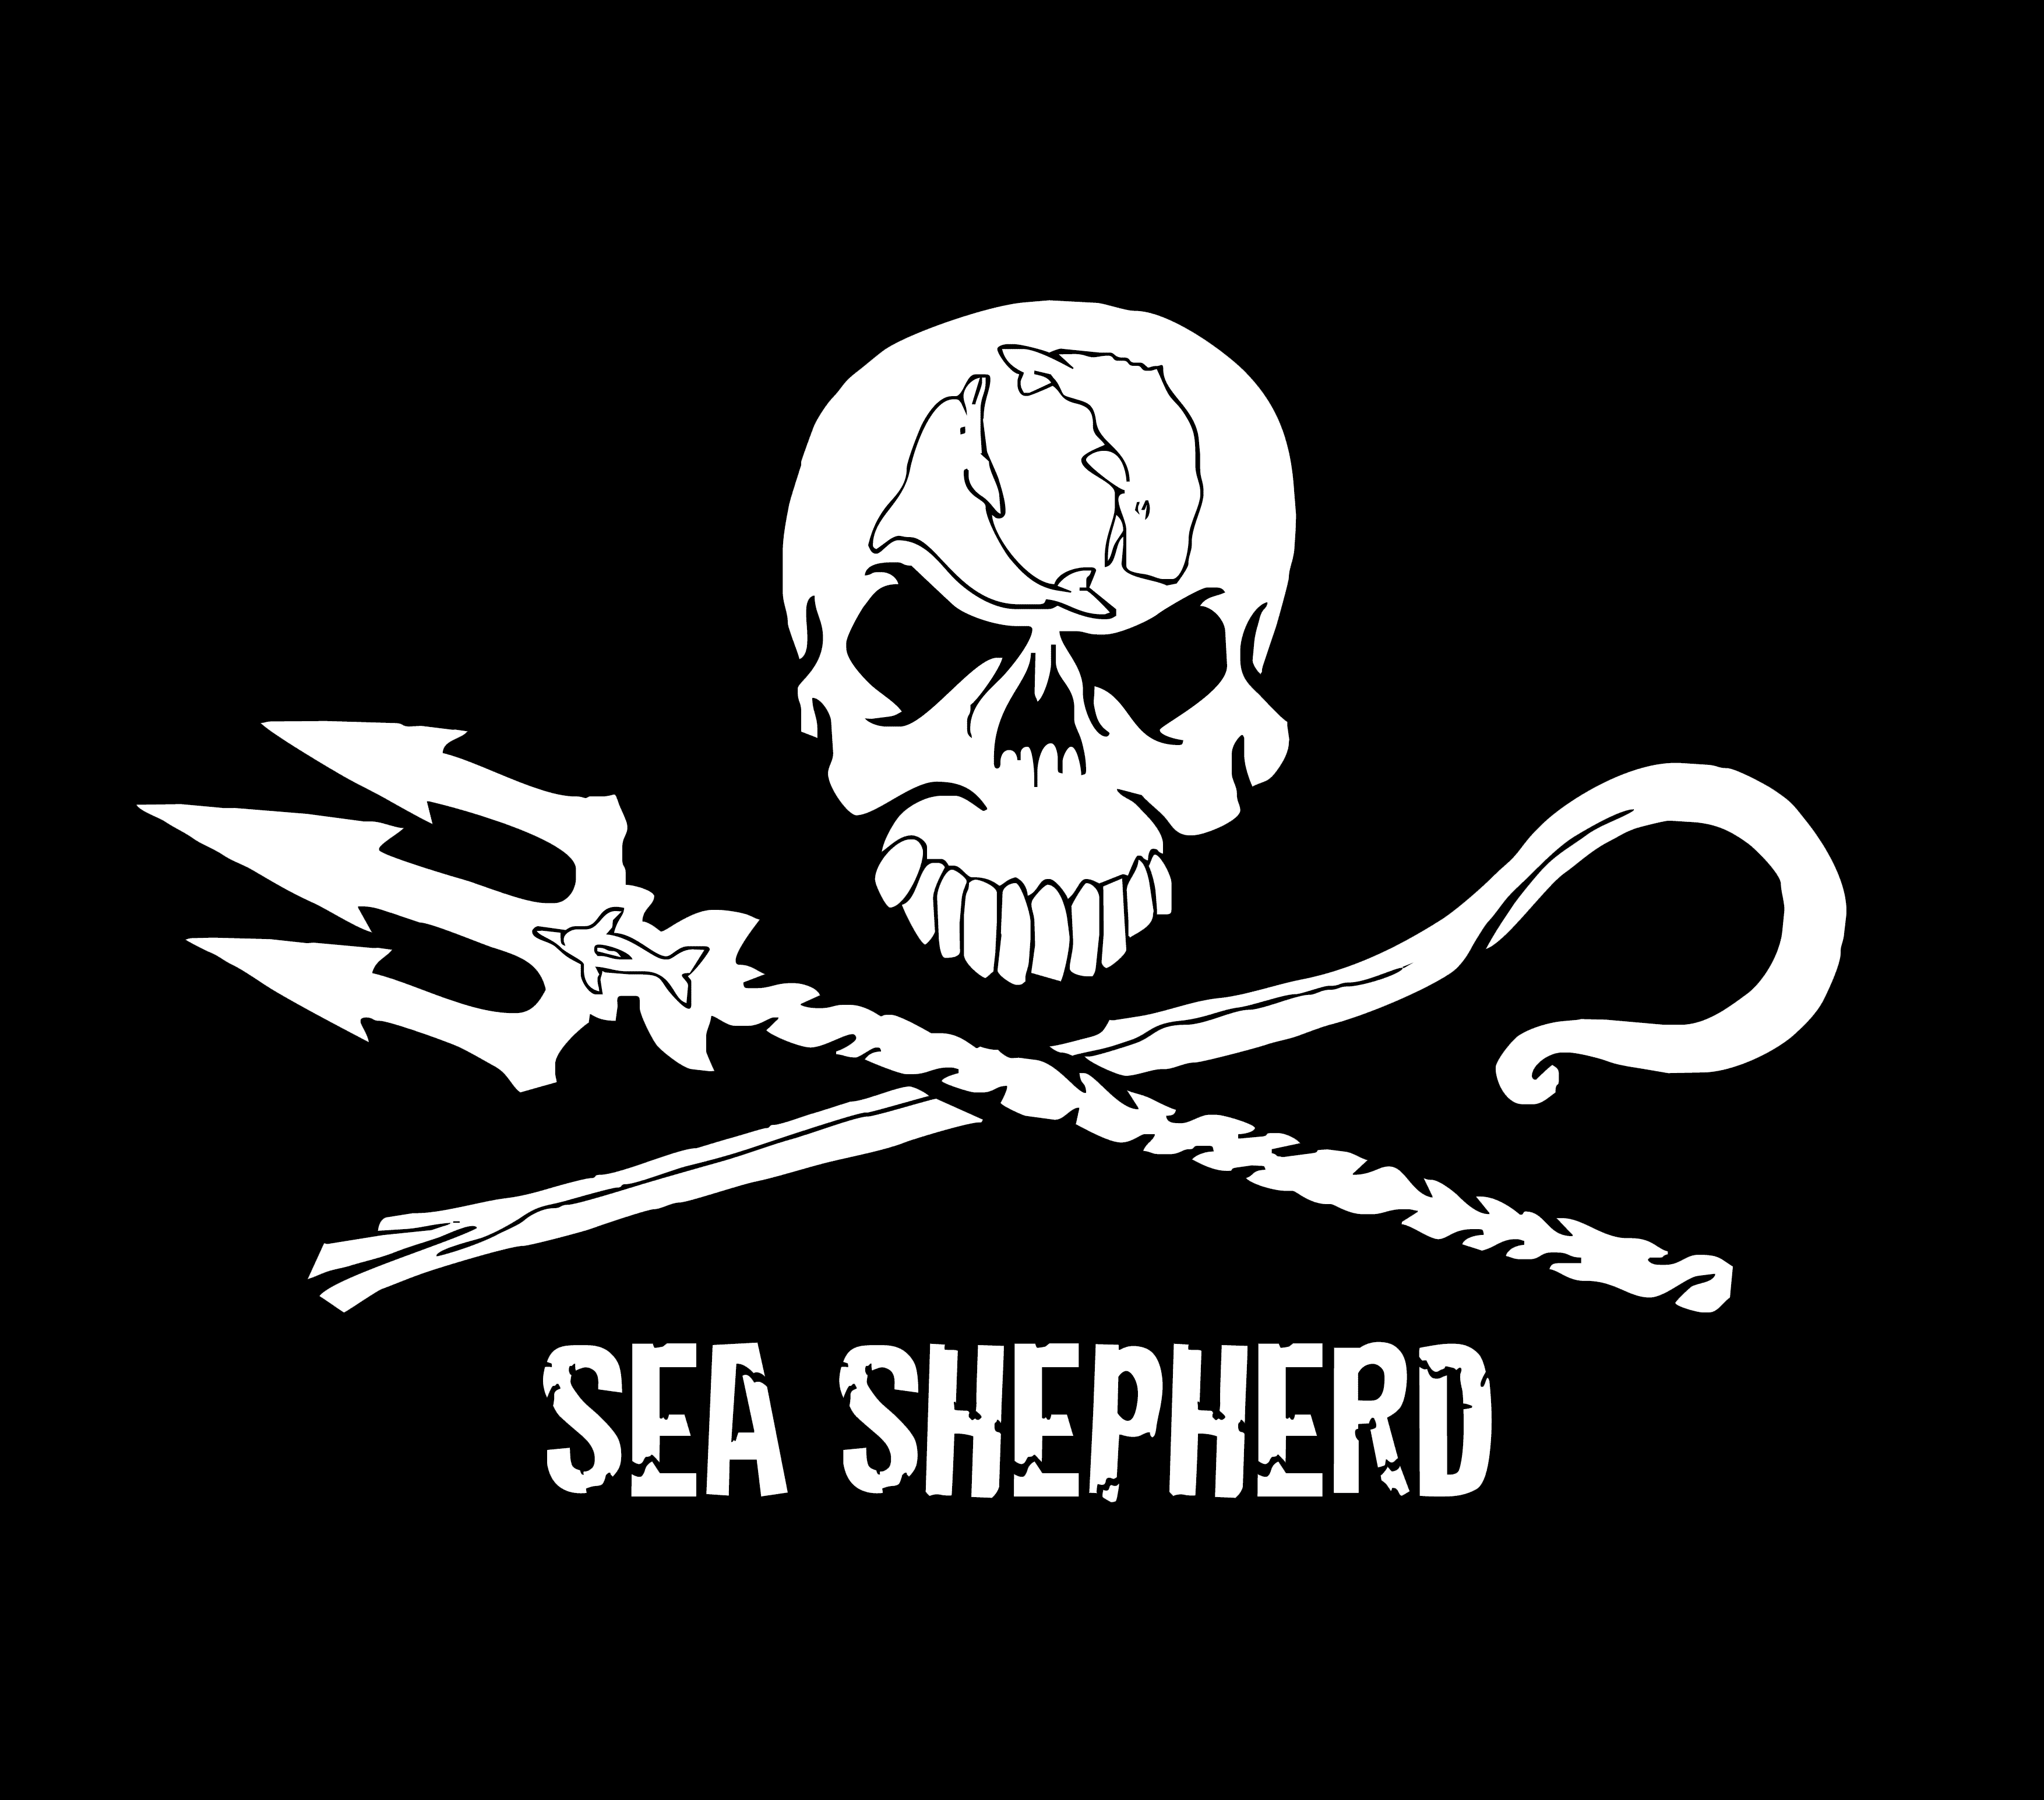 Sea Shepherd plastik atıkları işaret ediyor - campaigntr